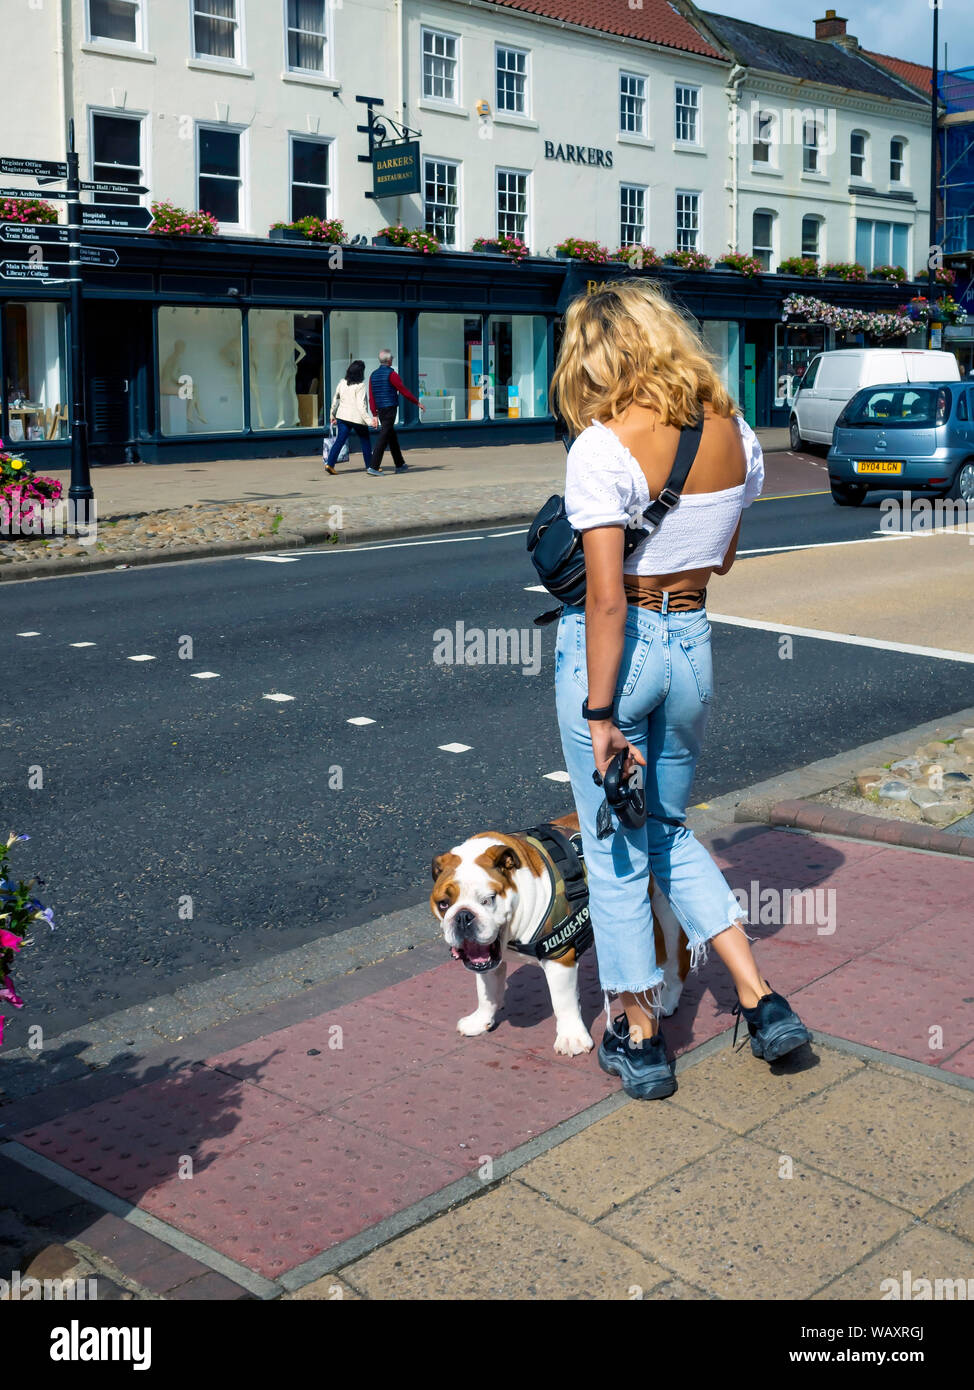 Ein leger gekleidet attraktive blonde Frau mit einem Bulldog warten die Straße in einem Yorkshire Markt Stadt zu überqueren Stockfoto